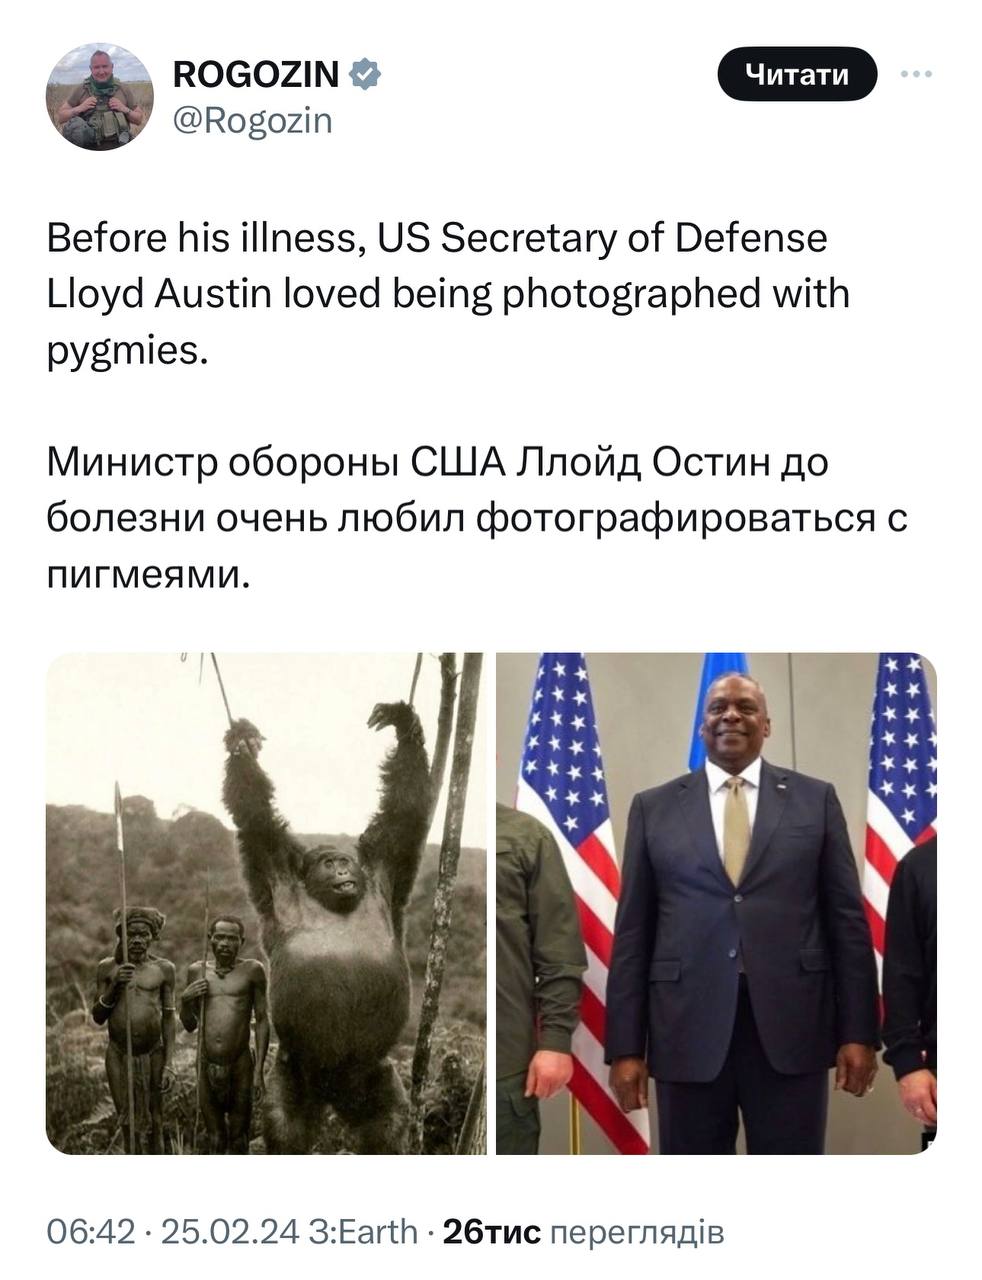 Раненный в ягодицы Рогозин сравнил главу Пентагона с гориллой - реакция Сети